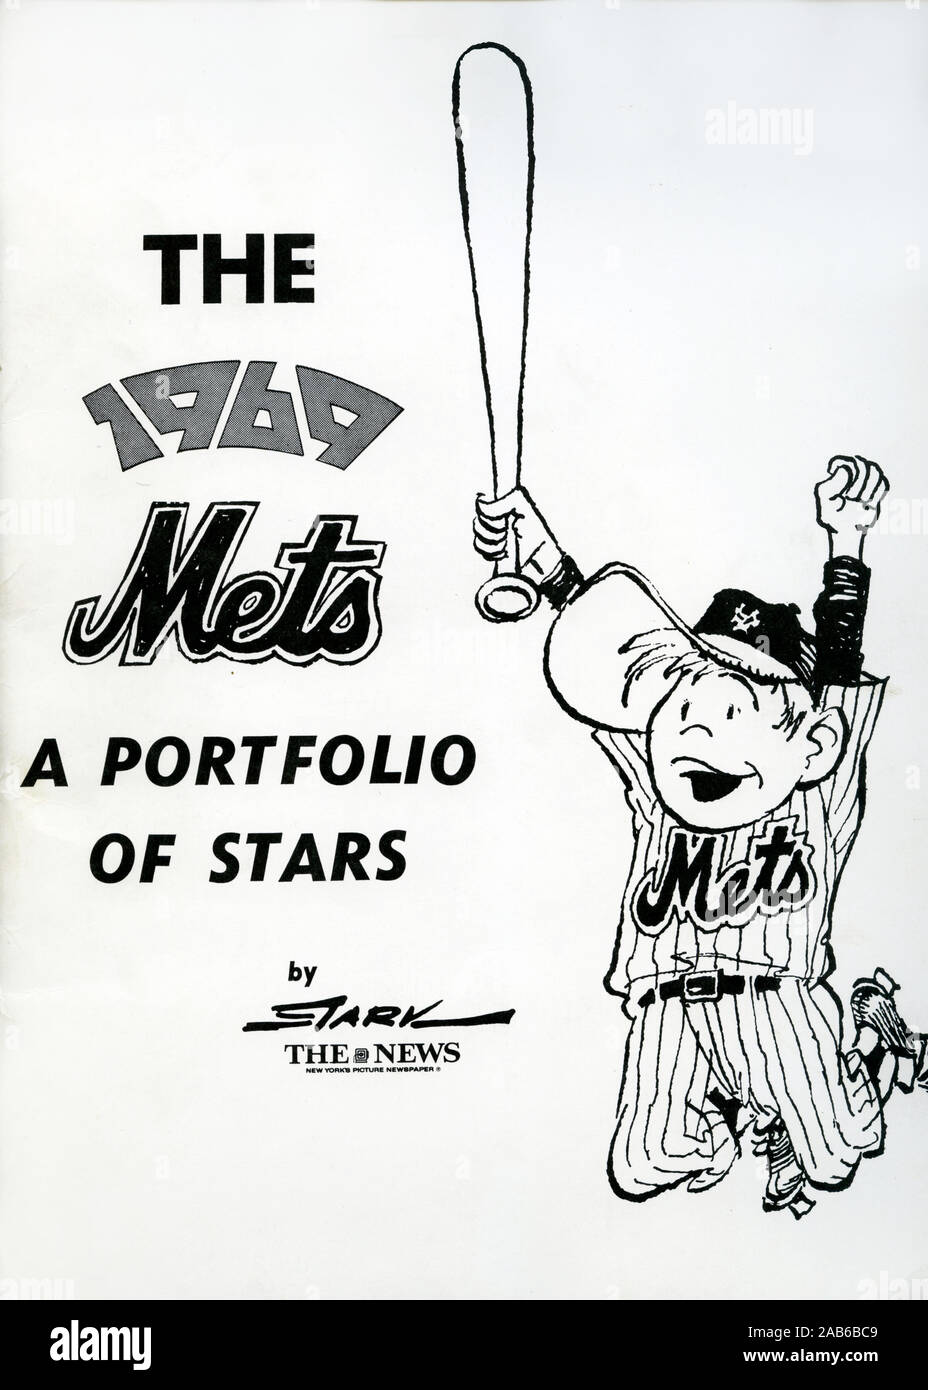 Portfolio bei schwarzen und weißen Kohlezeichnungen reproduziert als Souvenir Porträts der 1969 New York Mets Team, dass die World Series von Künstler Stark gewonnen und veröffentlicht als Souvenir Portfolio durch die Nachrichten von New York. Stockfoto